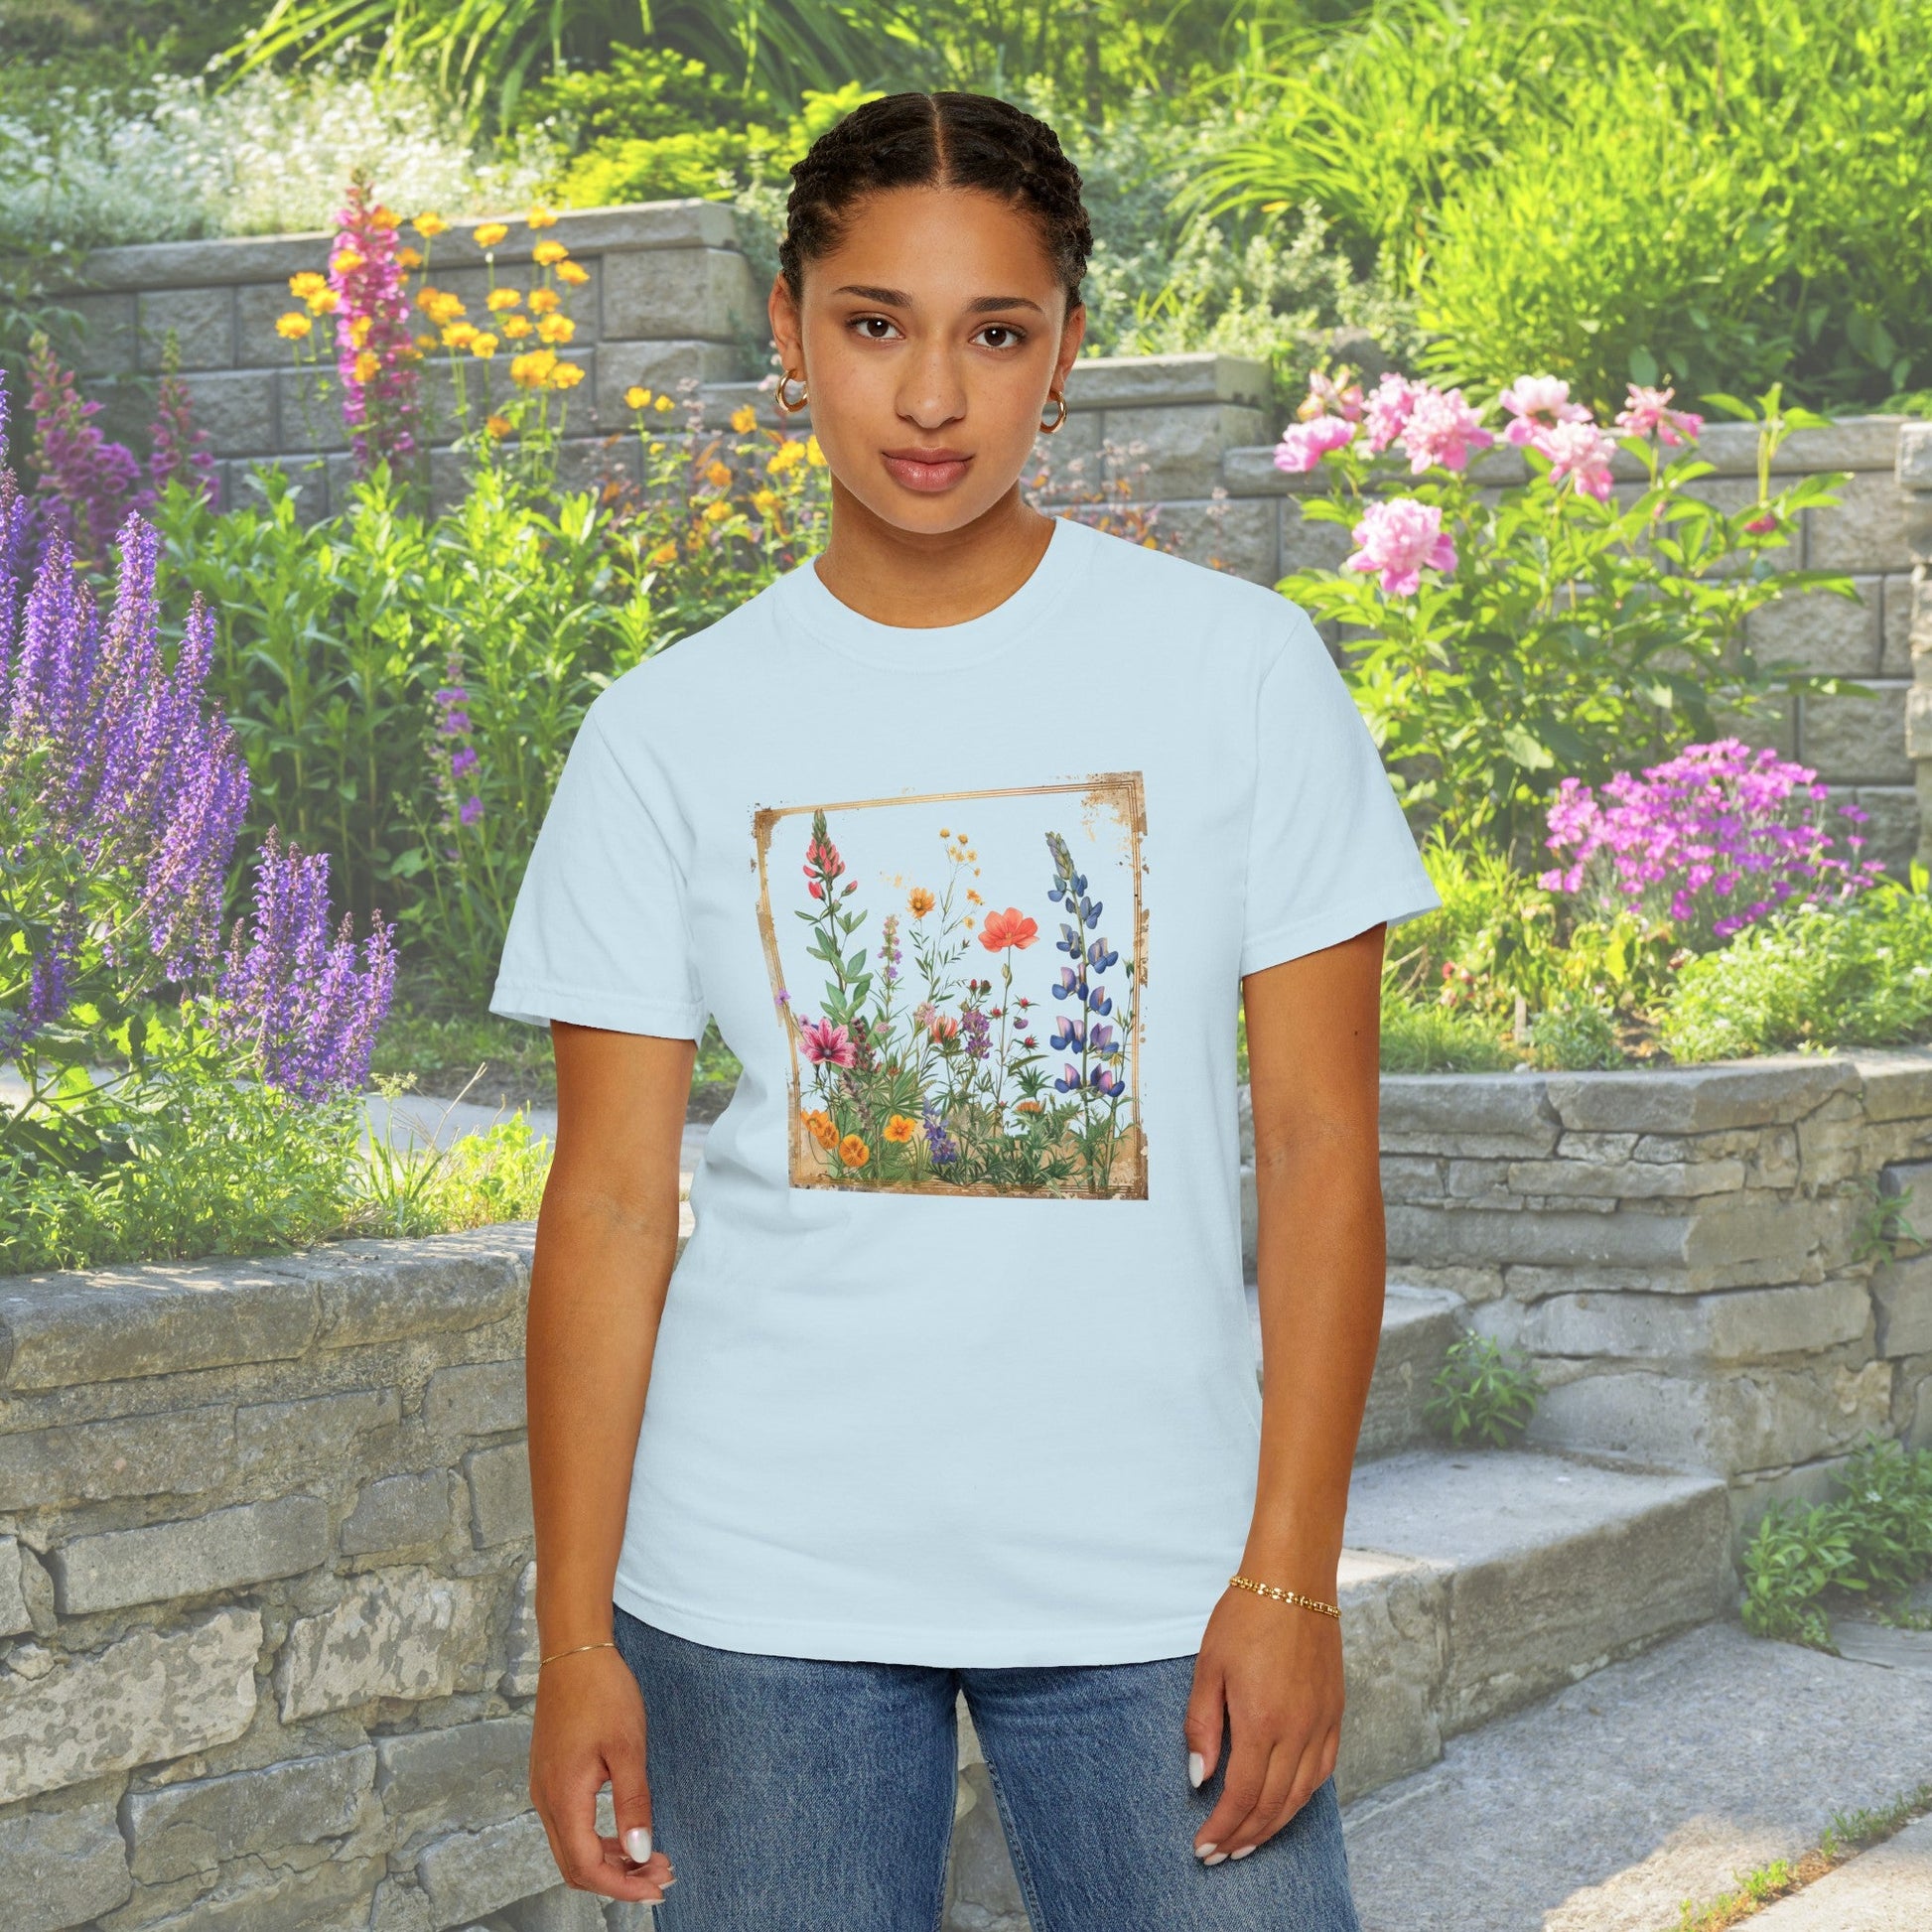 Flower t - Shirt, Vintage Wildflower Style Gift, Trendy Flower Aesthetic - FlooredByArt